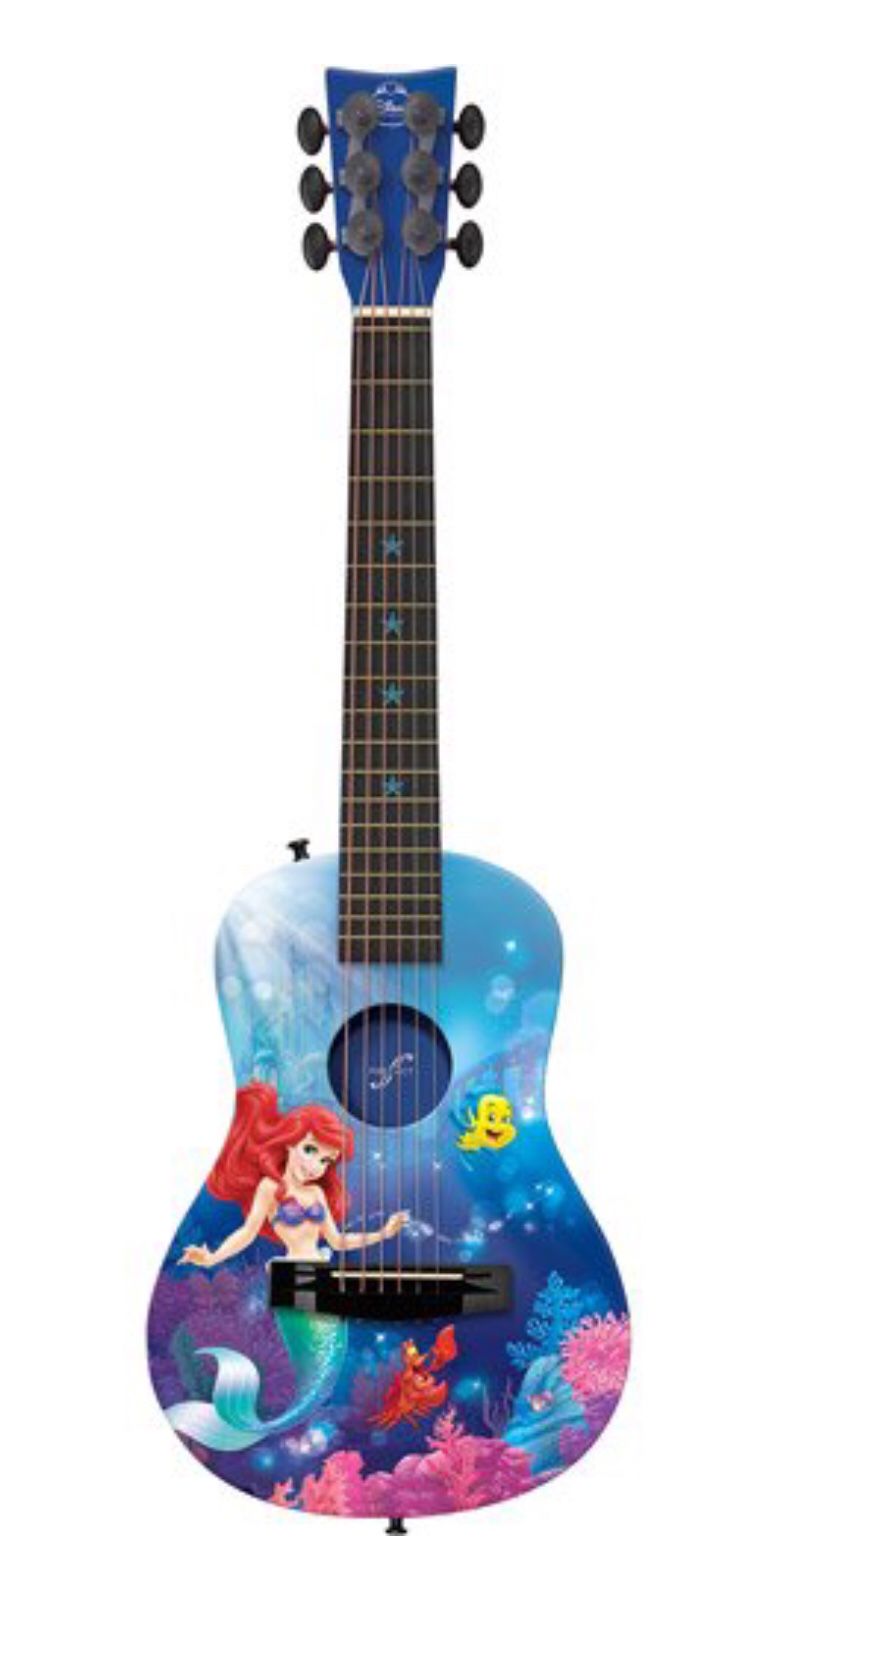 New mermaid guitar